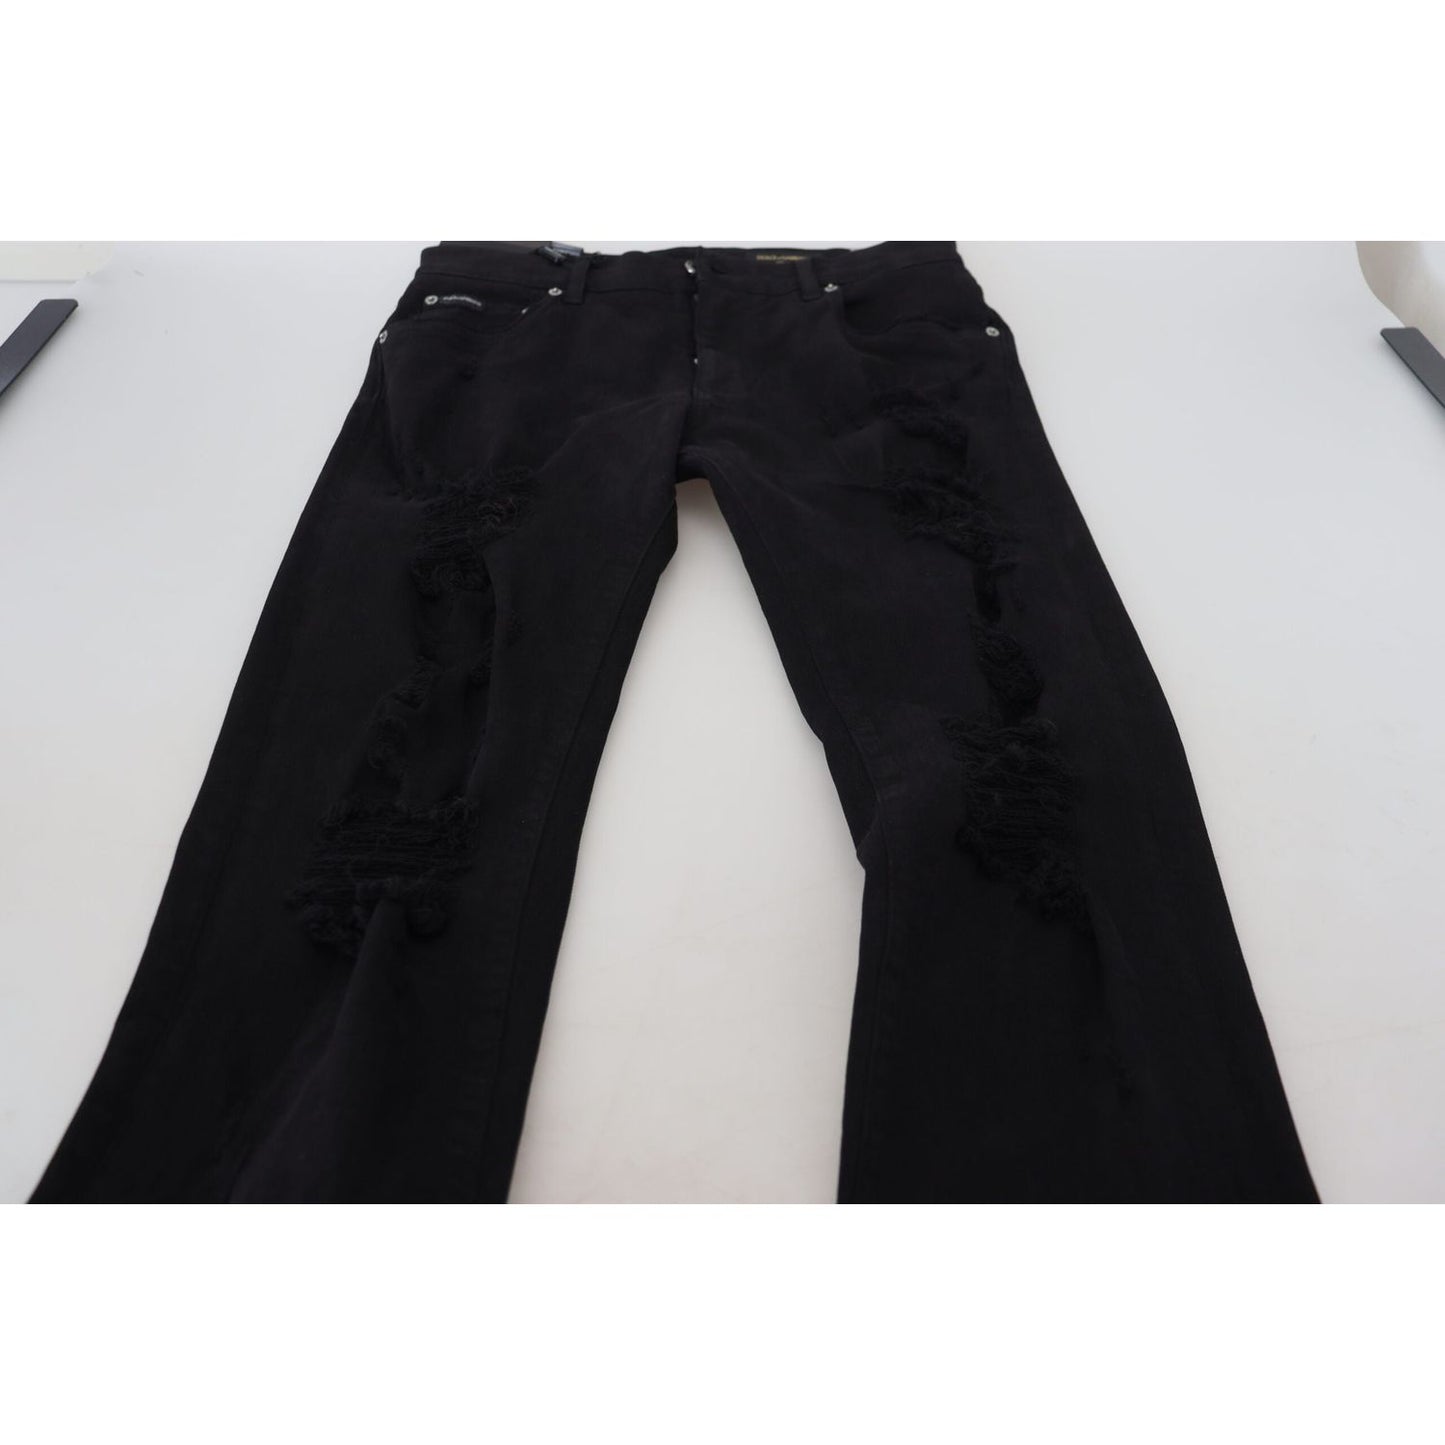 Dolce & Gabbana Svelte Black Tattered Slim Fit Denim black-slim-fit-tattered-denim-cotton-jeans IMG_4938-scaled-4a1da76d-951.jpg